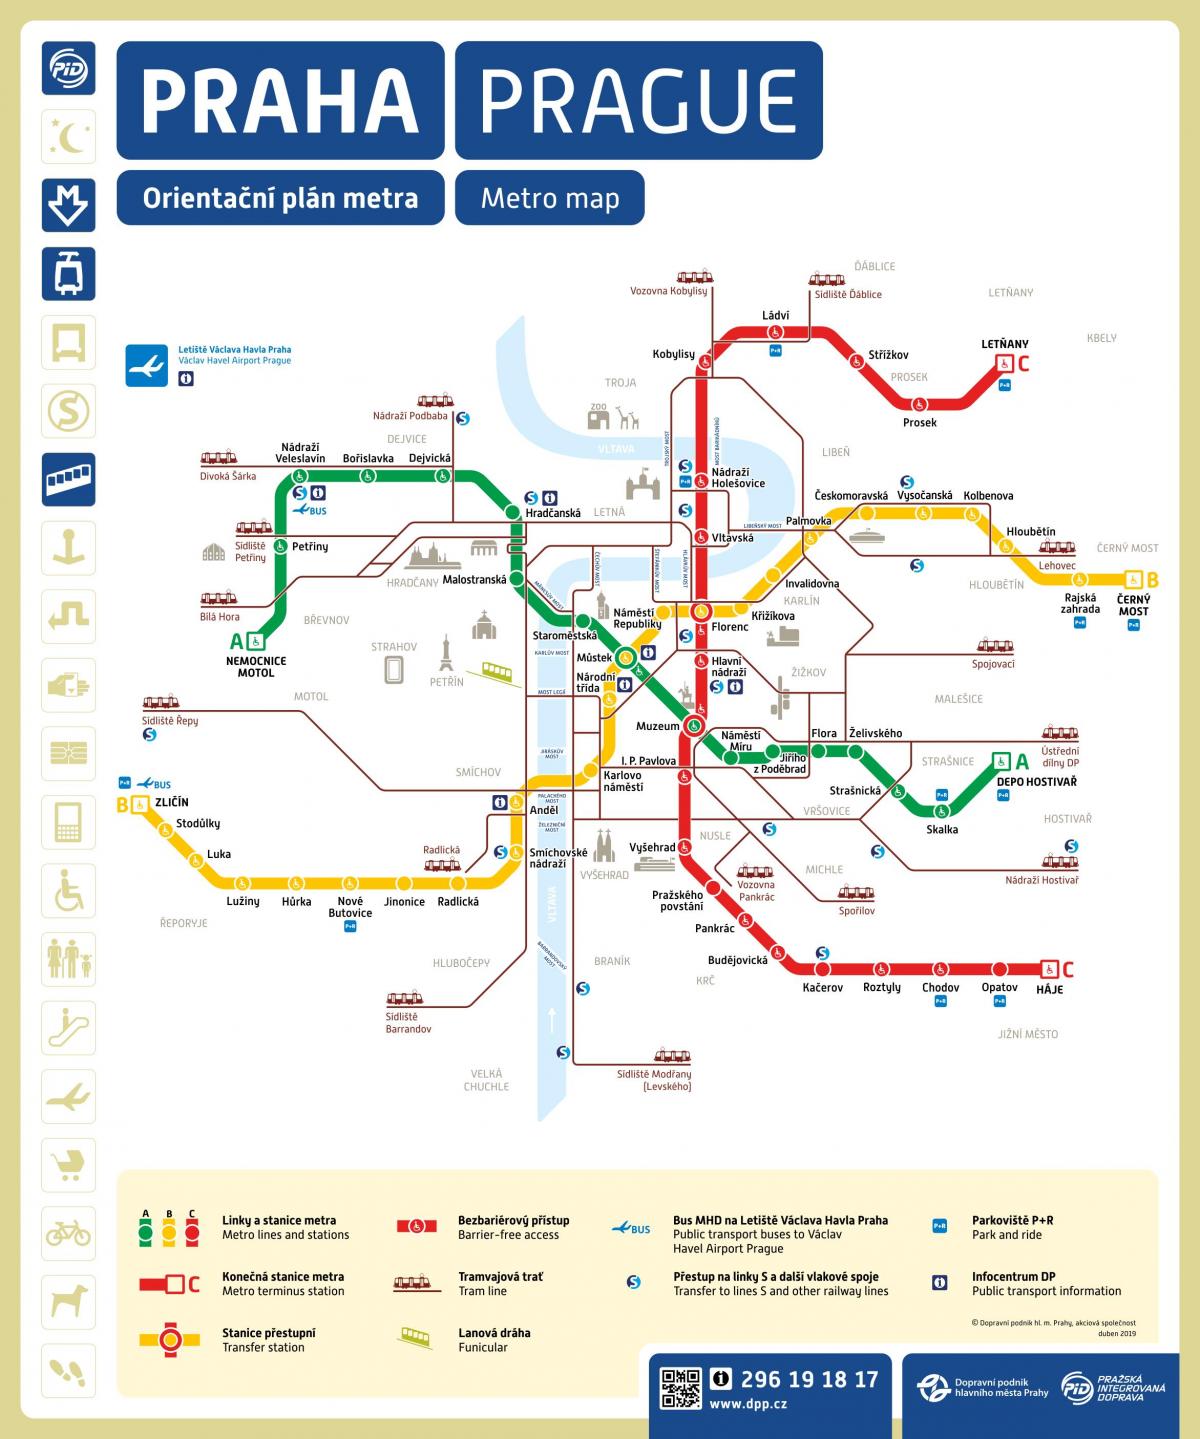 Mapa das estações de metrô de Praga